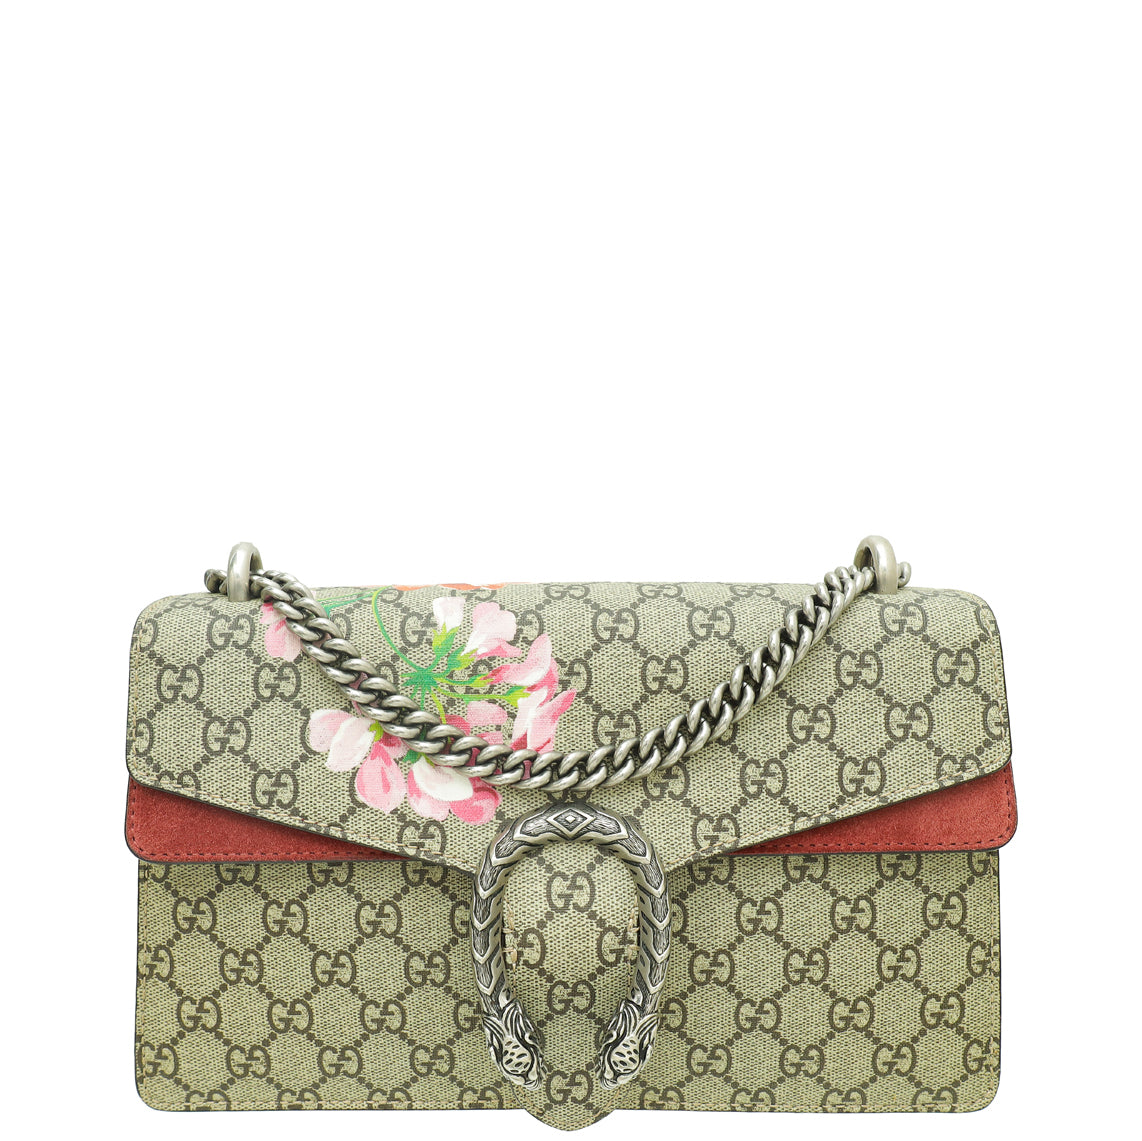 Gucci Bicolor GG Supreme Blooms Print Dionysus Small Flap Bag